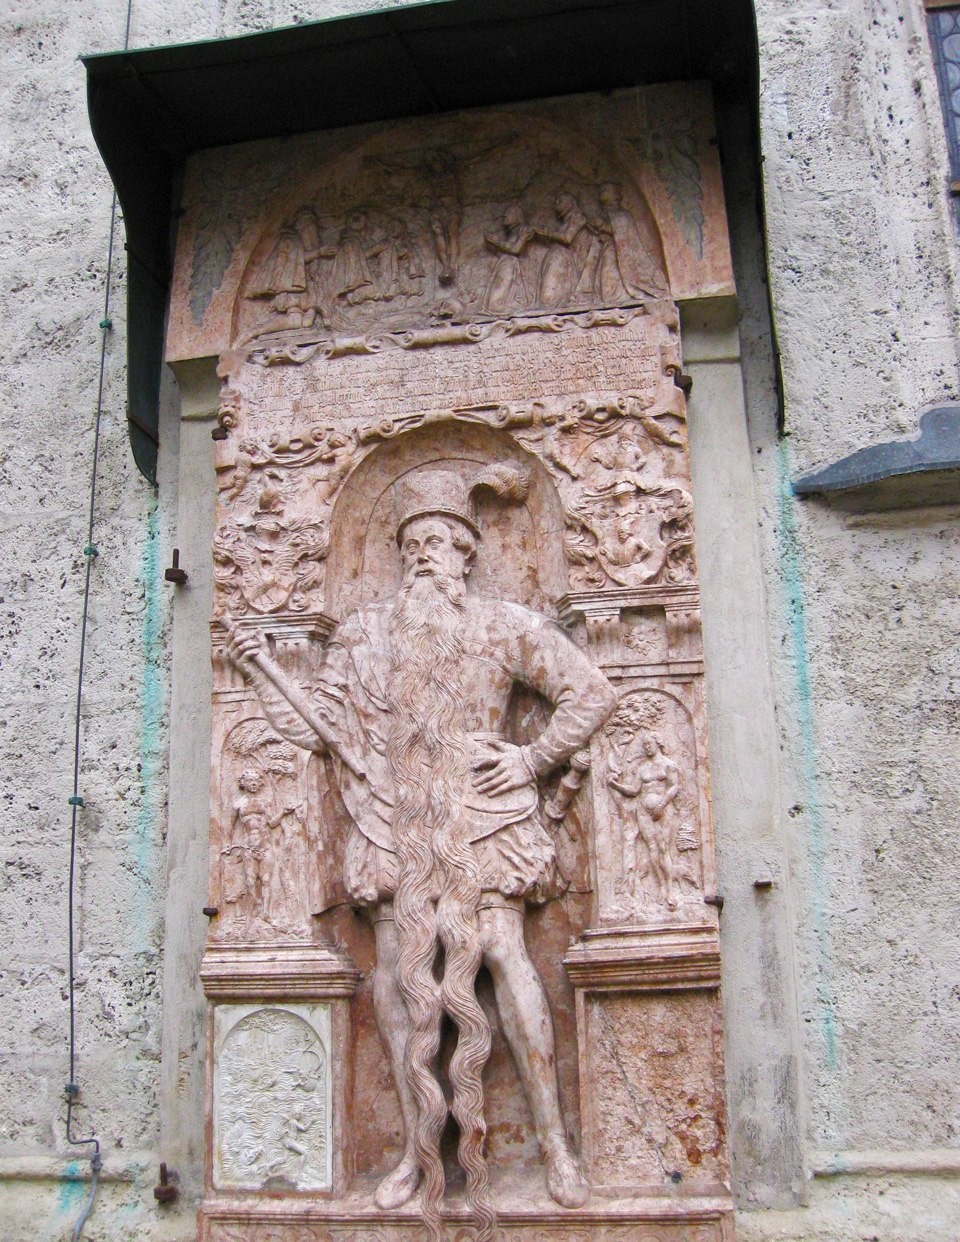 تمثال صنع تخليدا لذكرى (هانس ستينينغر) خارج كنيسة نمساوية.